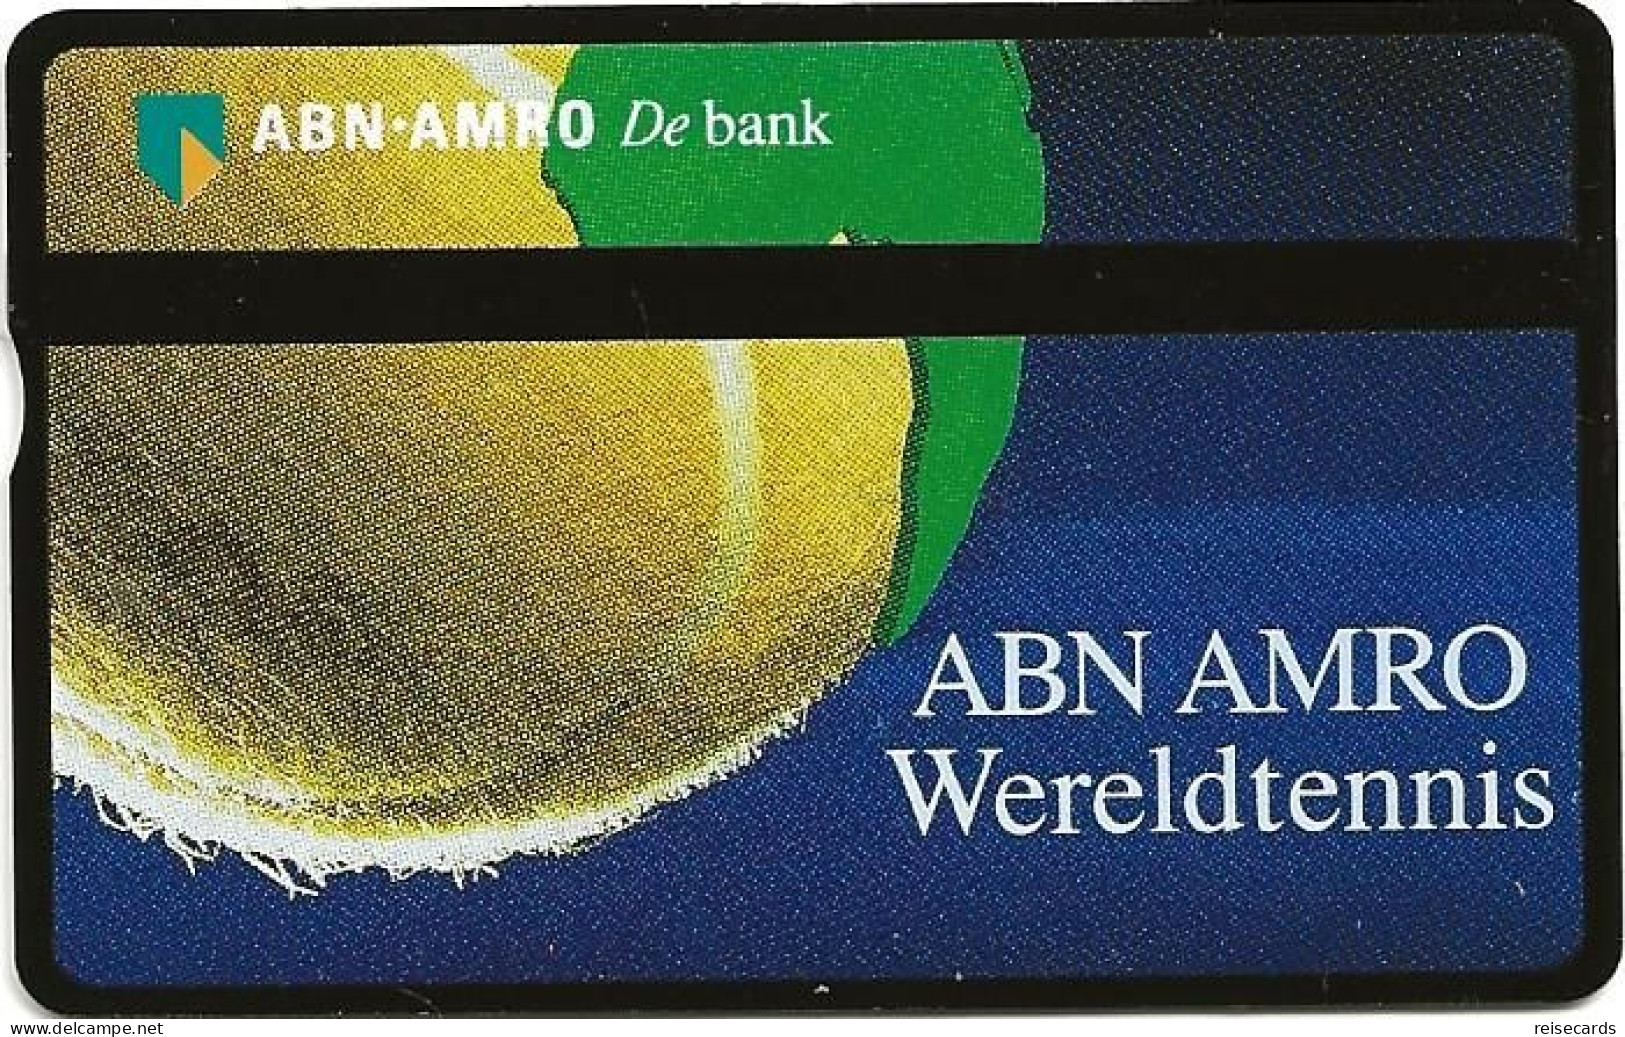 Netherlands: Ptt Telecom - ABN AMRO Bank - Wereldtennis - Públicas